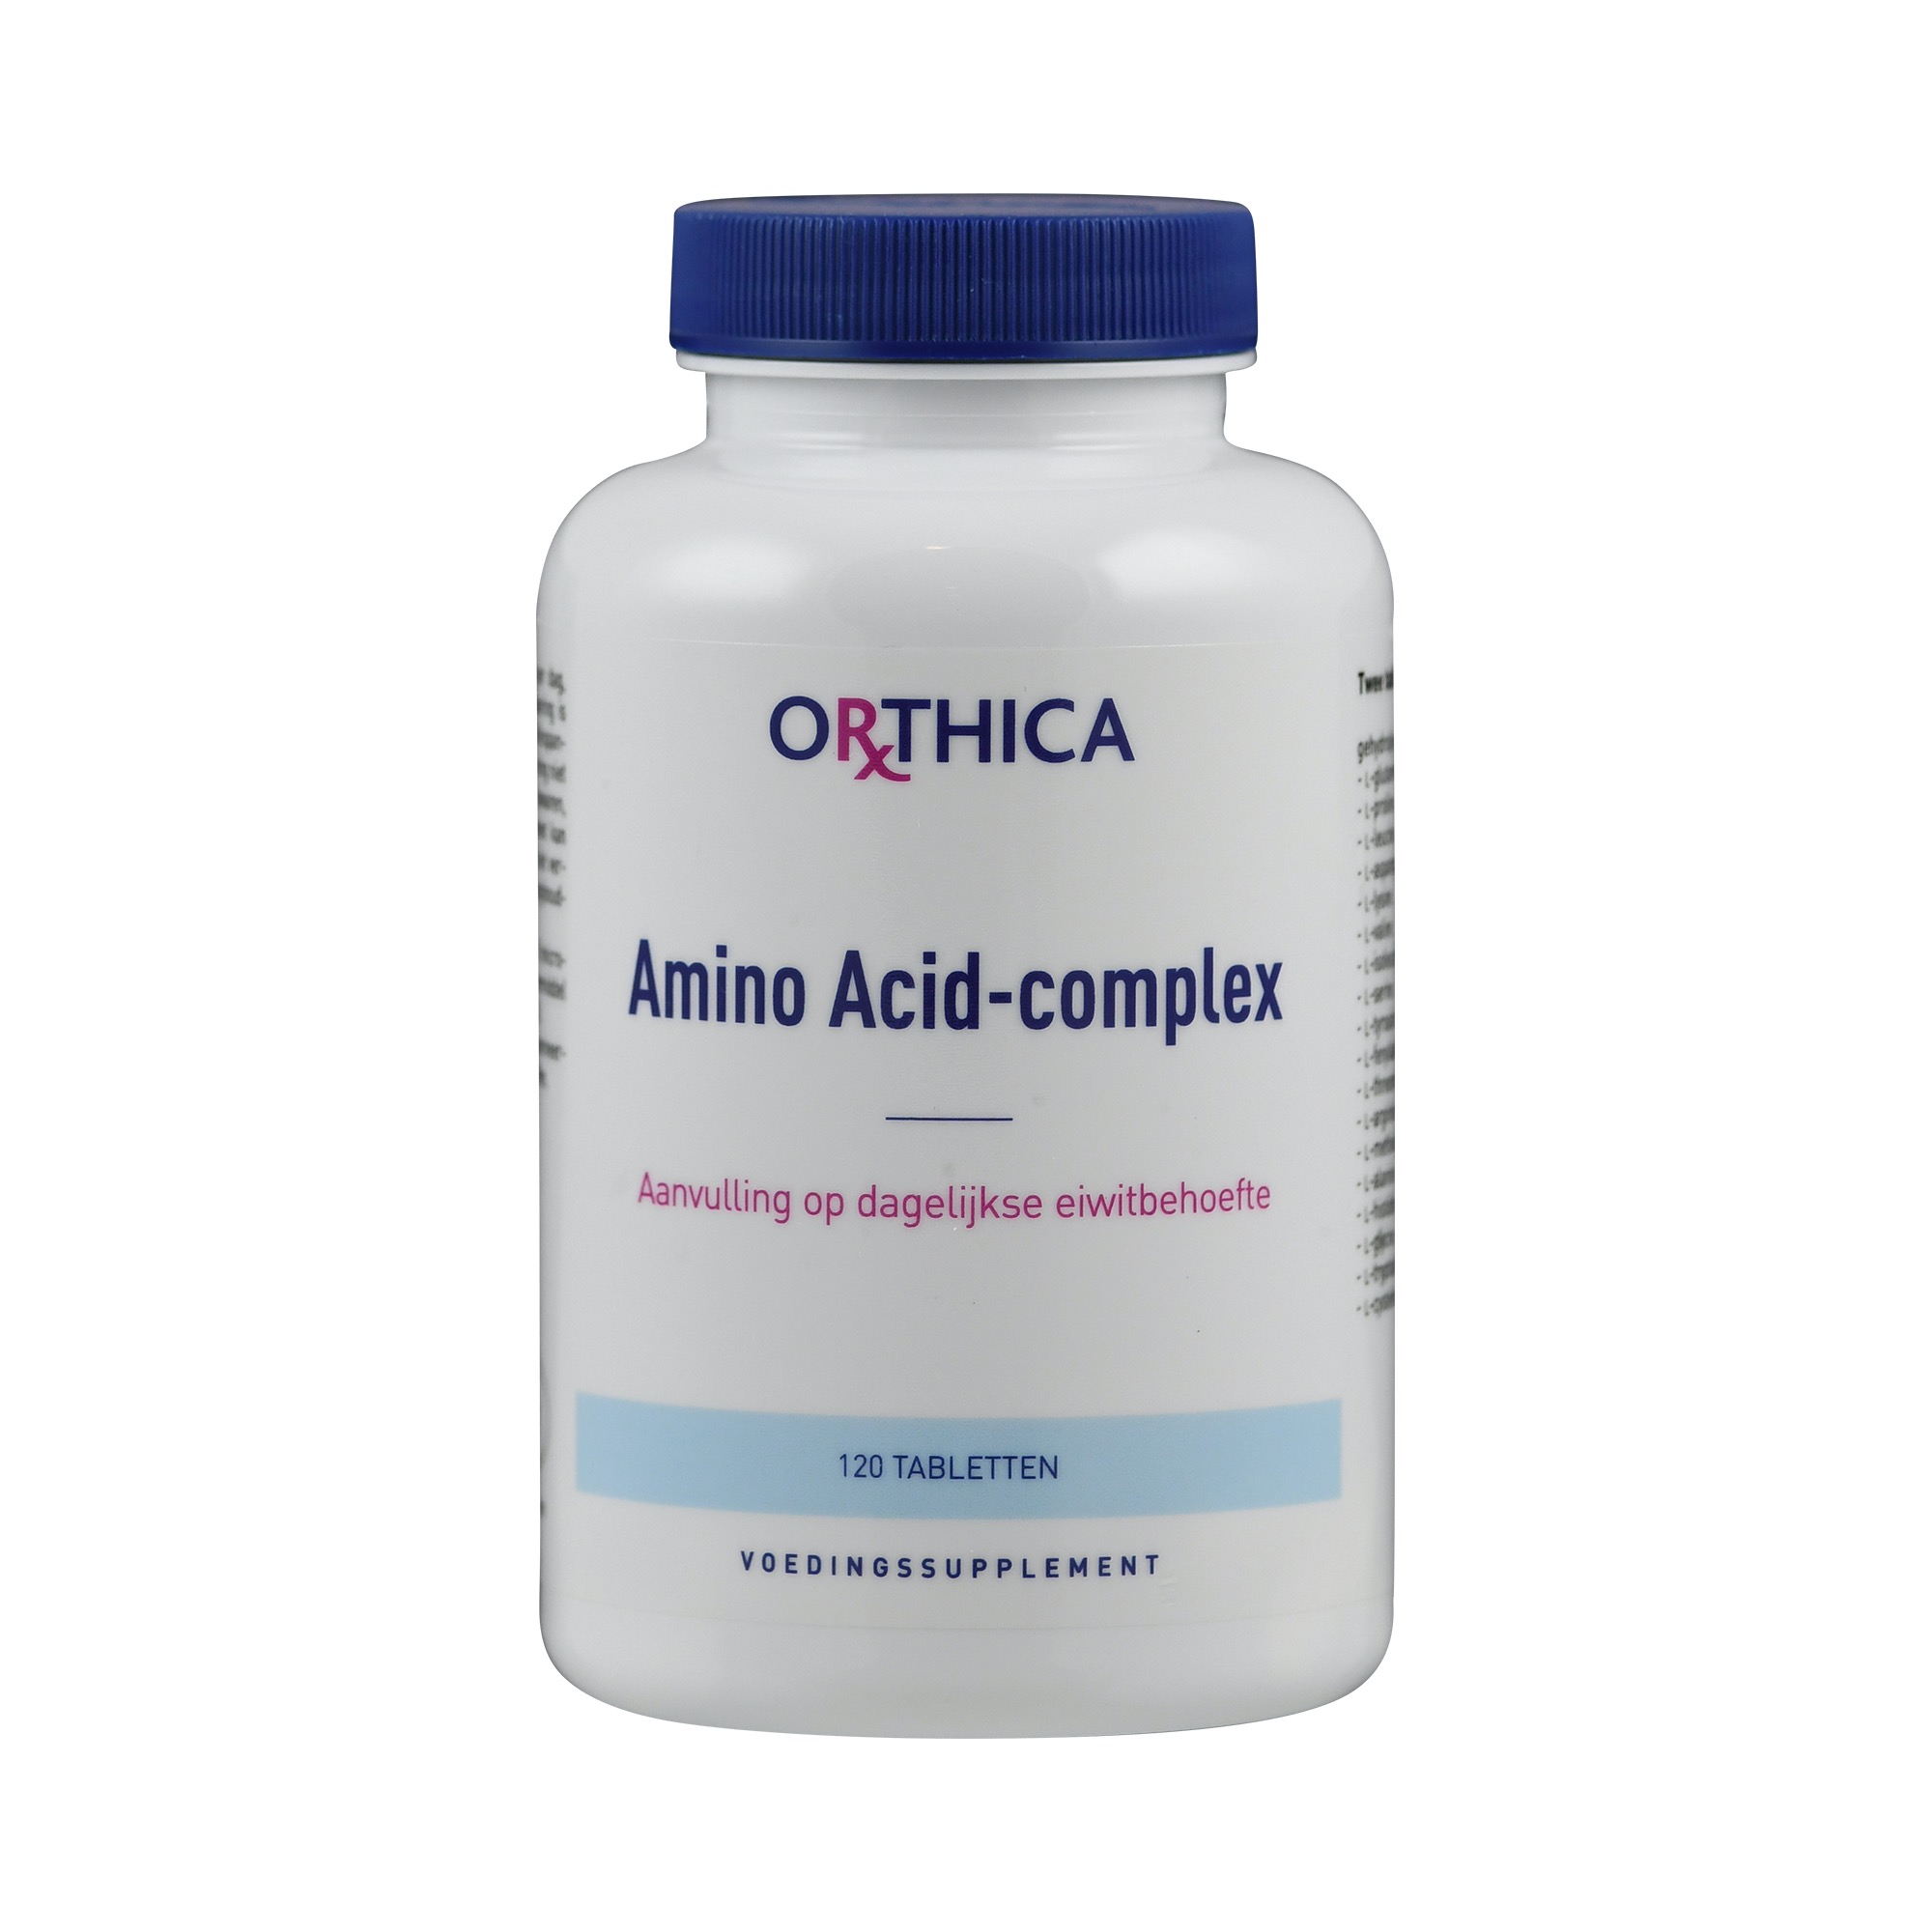 Aminosäure-Komplex Amino Acid-Complex von Orthica.